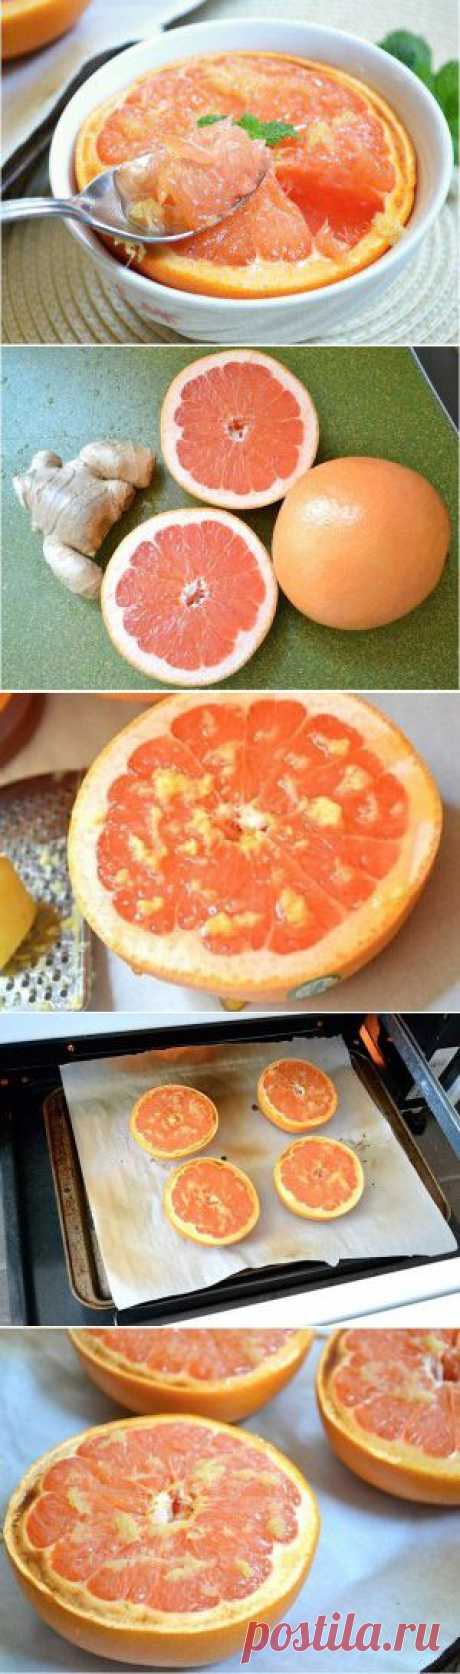 Грейпфрут запеченый с имбирем и медом | Рецепты | Само Совершенство